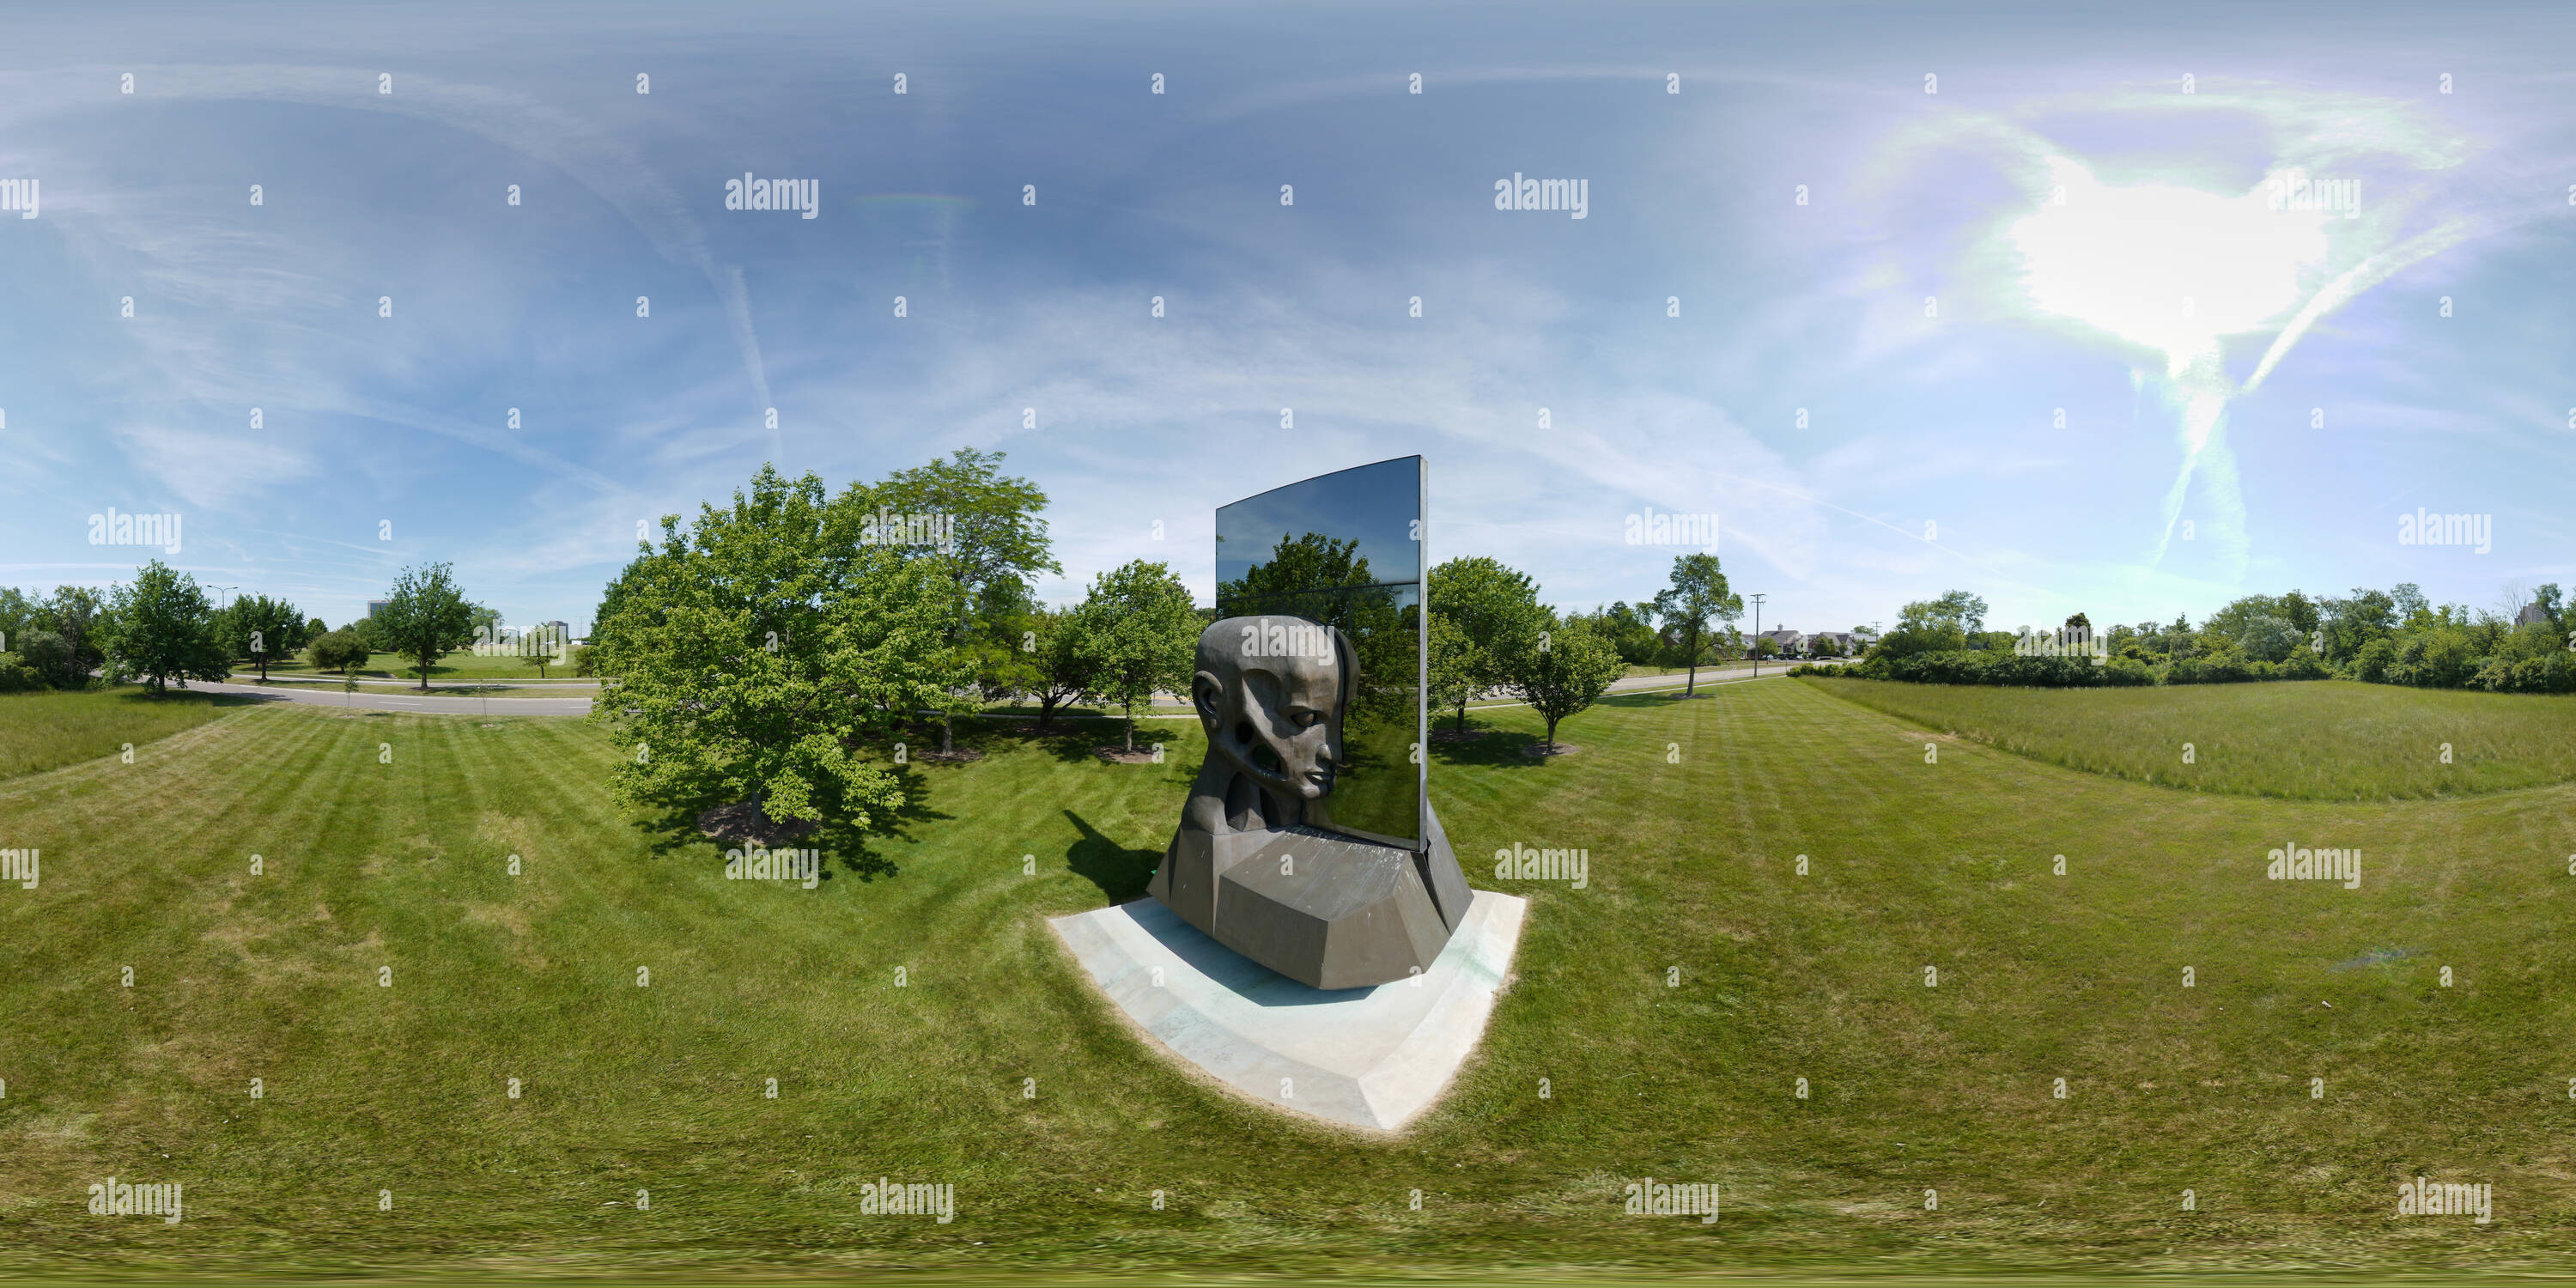 https://l13.alamy.com/360de/pn19fb/reflektierende-kopf-skulptur-ansicht-von-oben-pn19fb.jpg